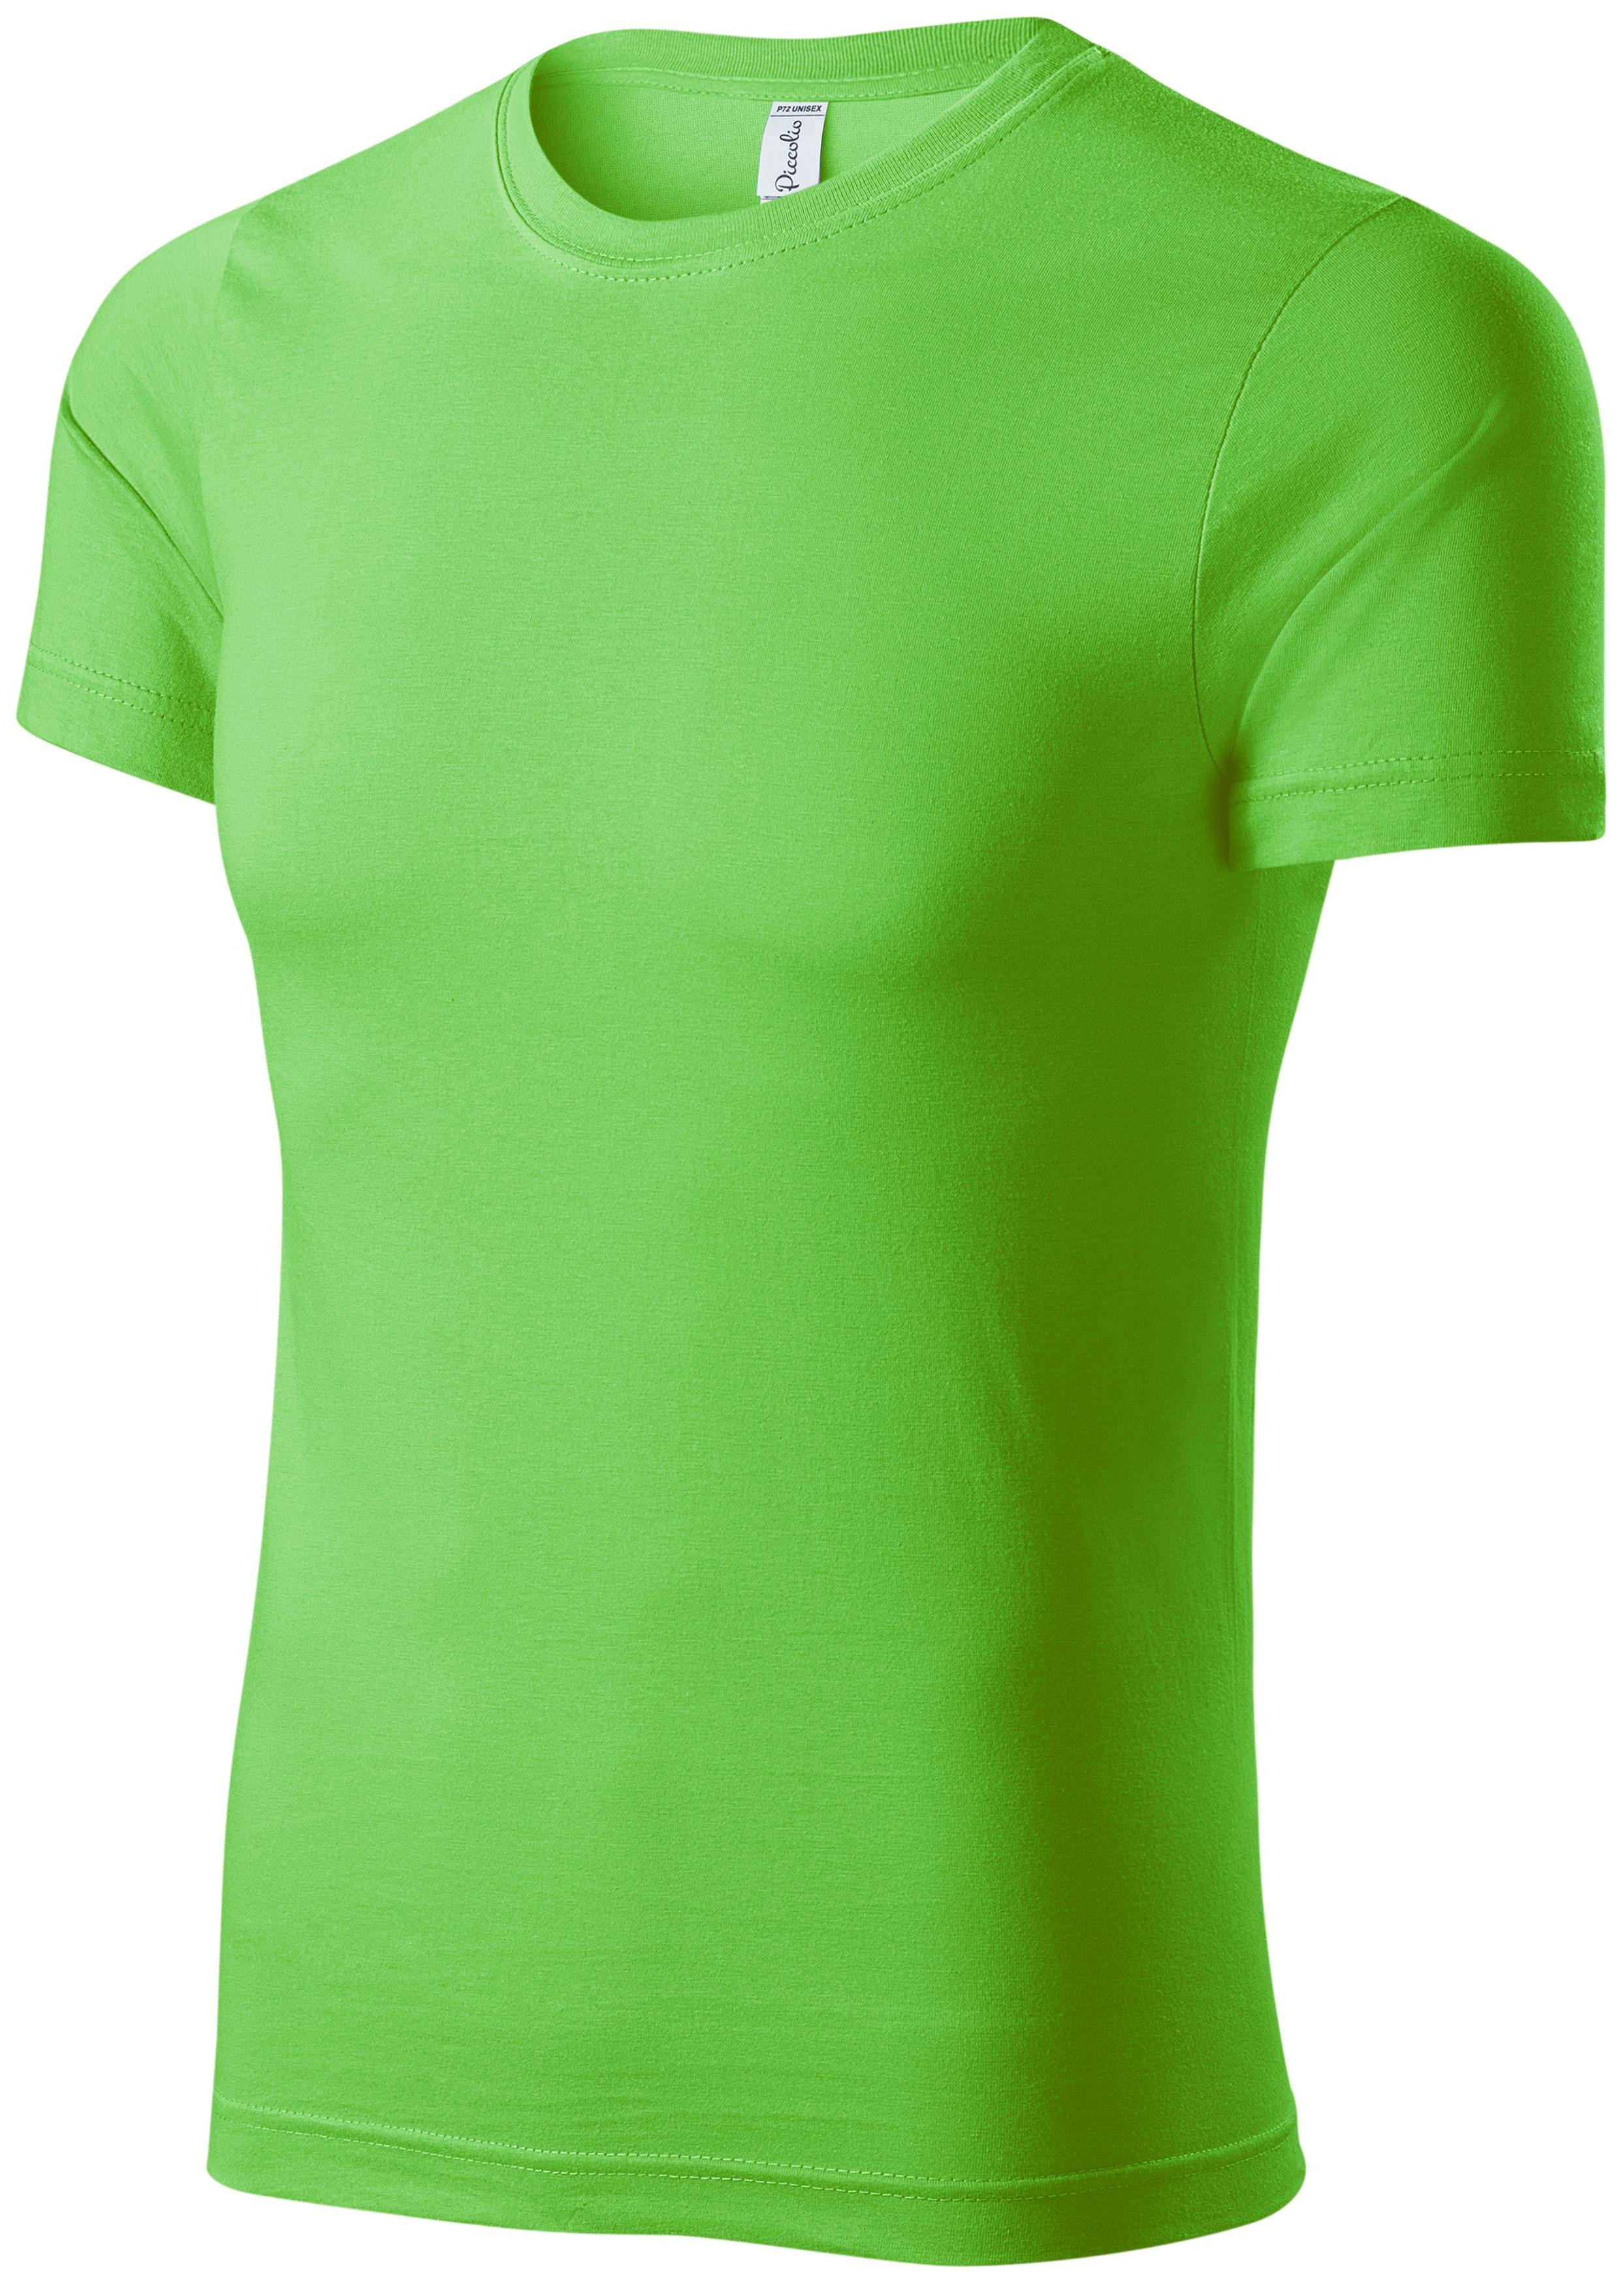 Detské ľahké tričko, jablkovo zelená, 146cm / 10rokov